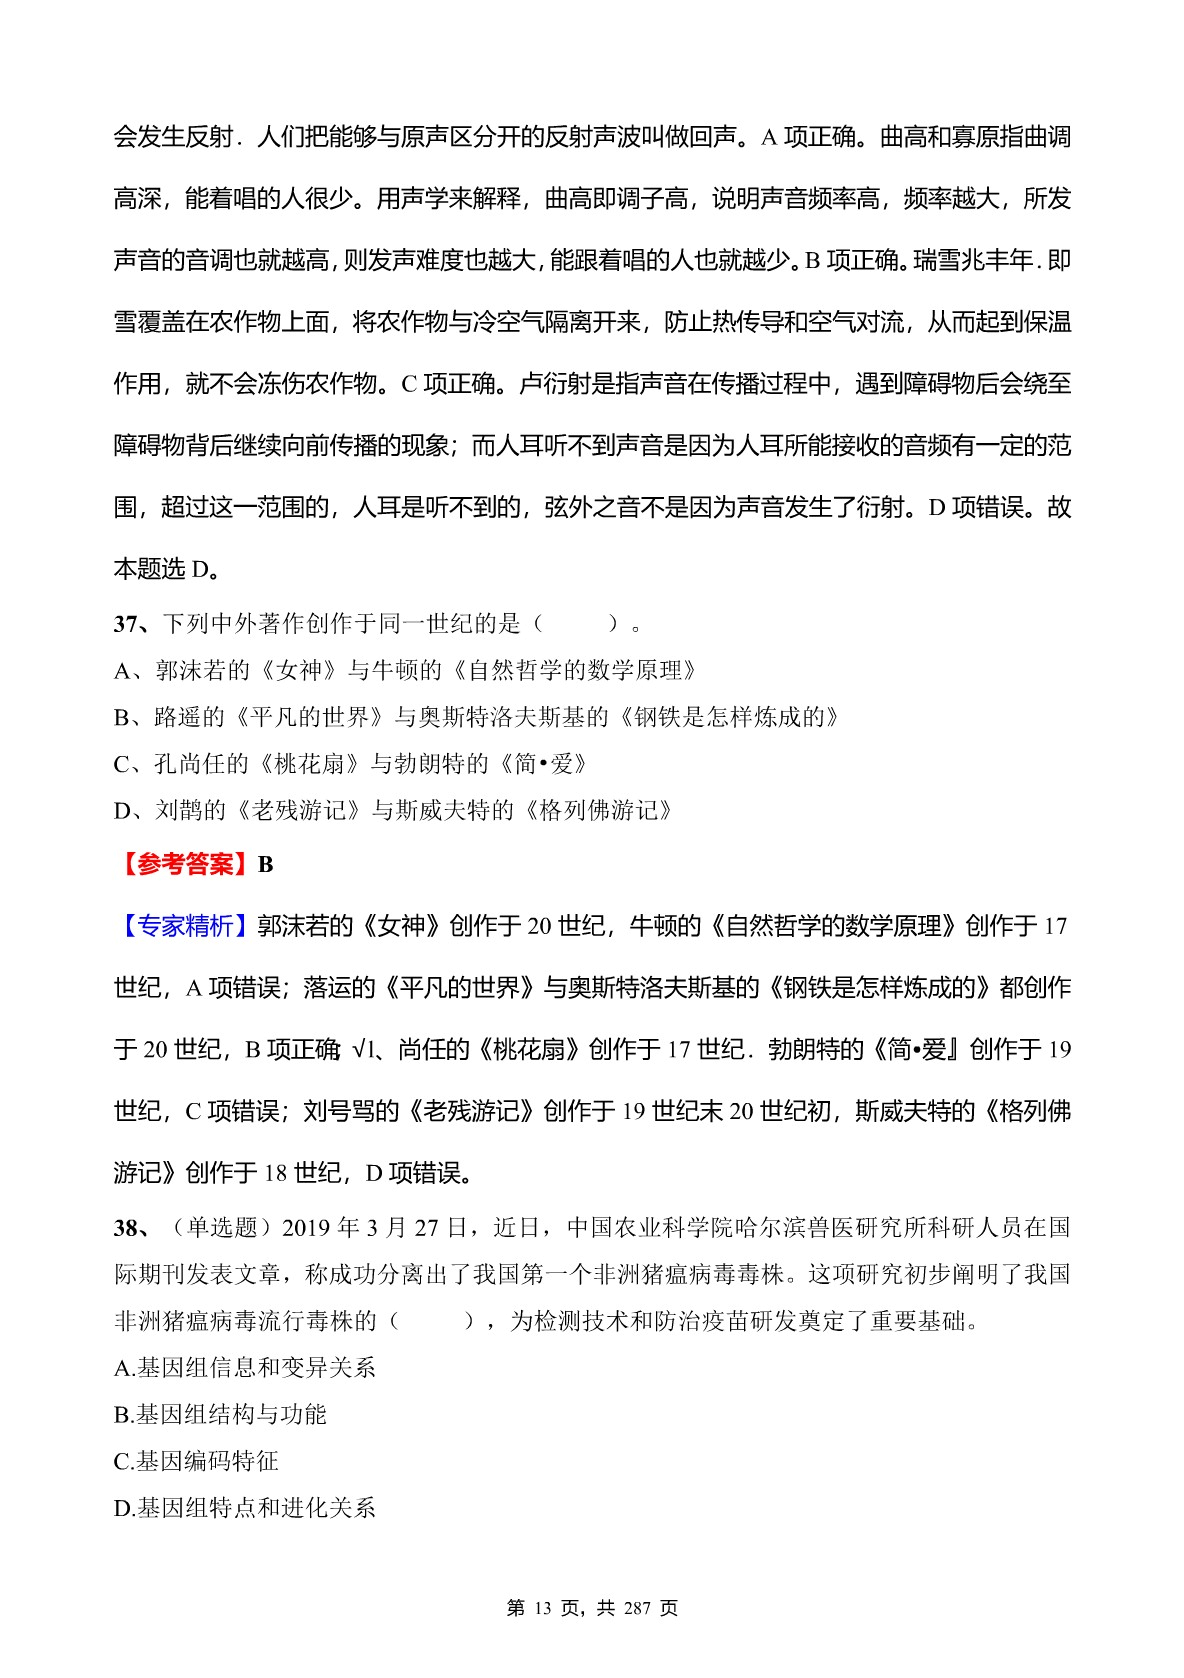 2020年重庆市事业单位招聘考试《综合基础知识》真题库及标准答案